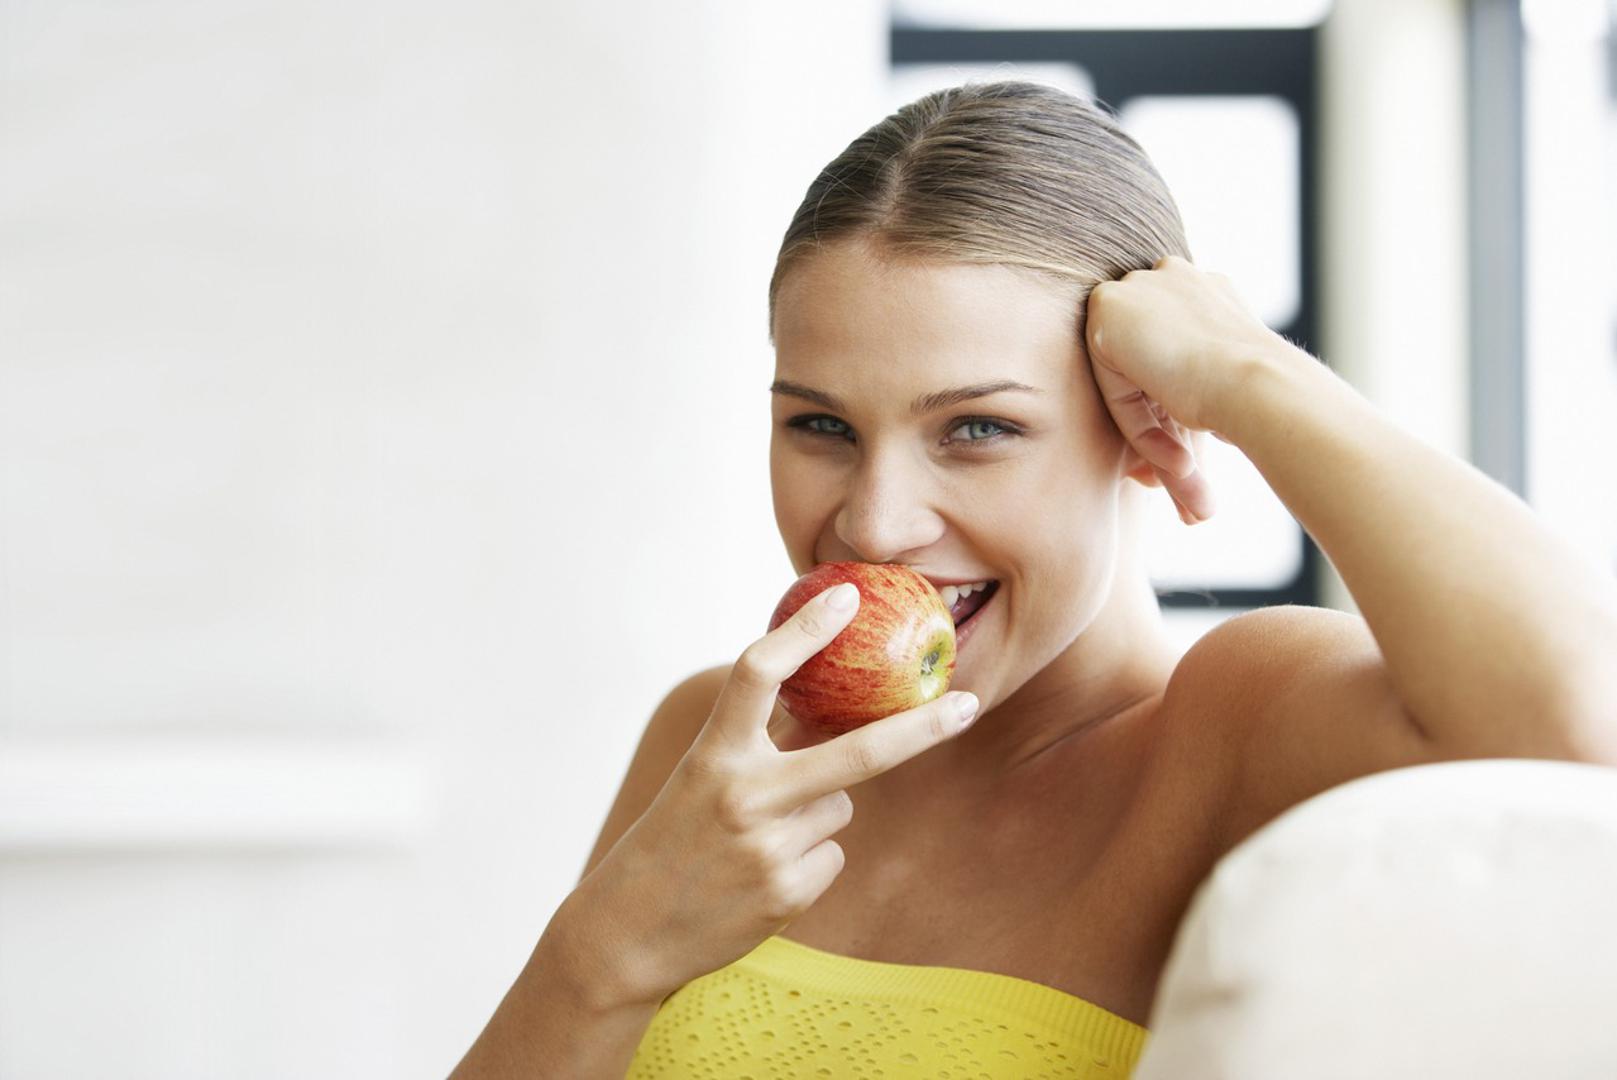 Osim što je dobra za probavu i ubrzava metabolizam, jabuke pomažu i kod otežanog disanja. Ako konzumirate pet ili više jabuka tjedno poboljšat će se funkcija pluća zbog antioksidansa koji se nalazi u kori jabuke. Osim toga, osobe koje jedu više od jedne jabuke dnevno imaju manji rizik od obolijevanja od nekoliko vrsta raka – jajnika, dojke, prostate, debelog crijeva, jednjaka...
